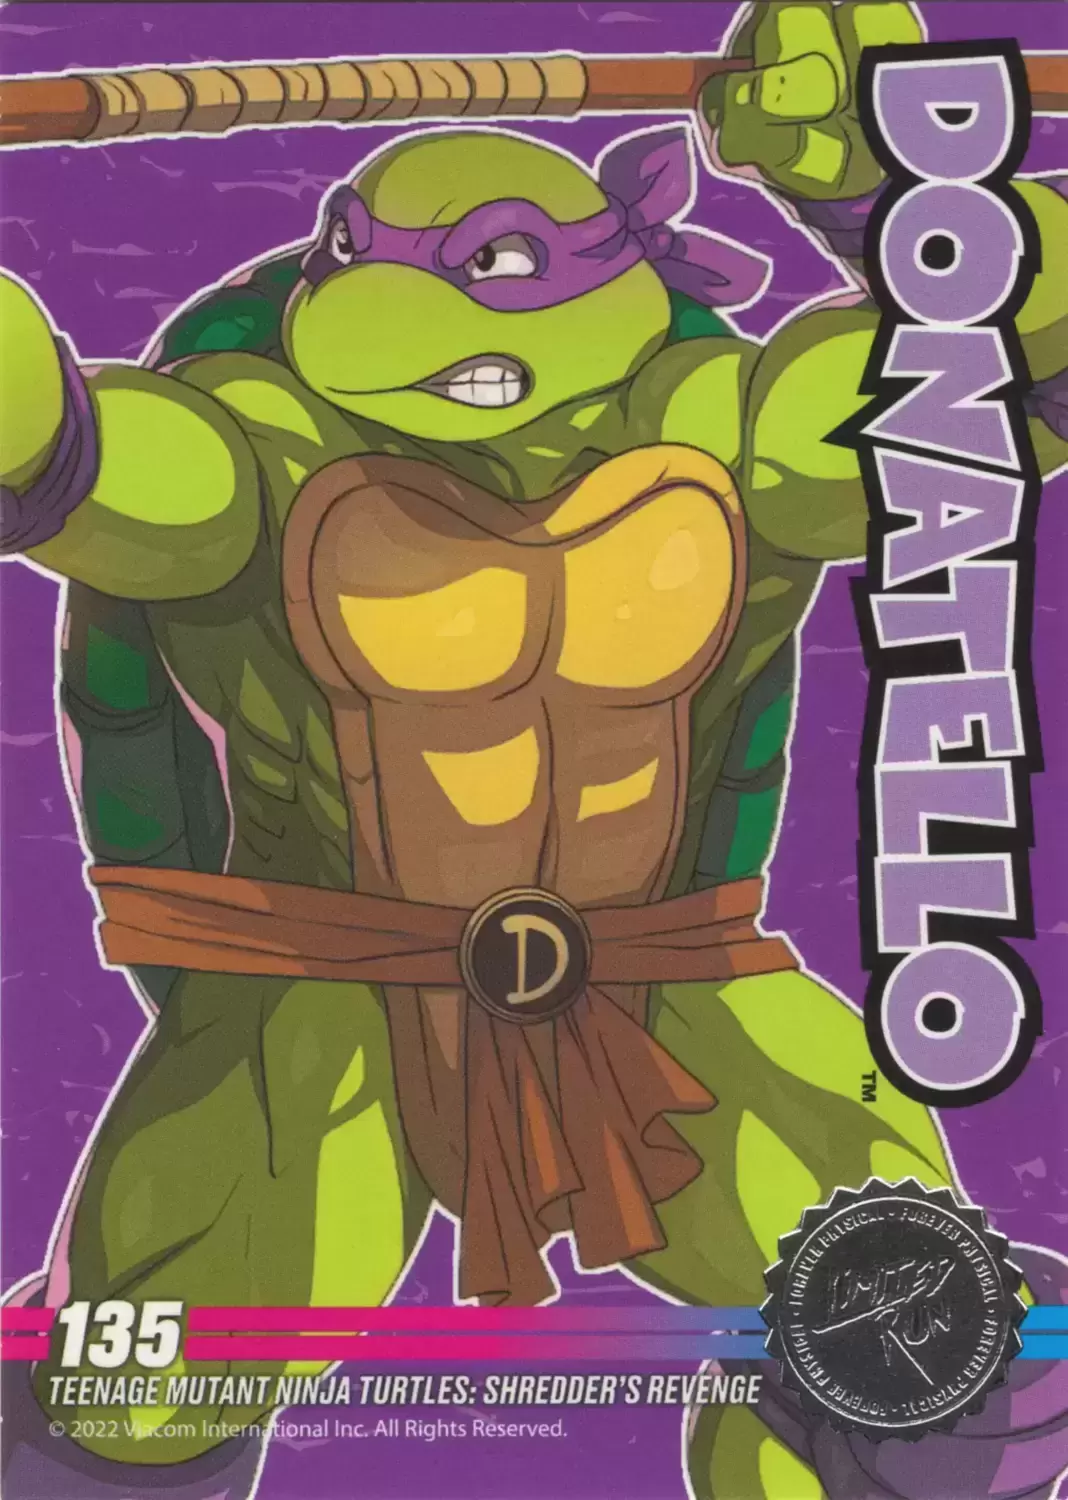 Teenage Mutant Ninja Turtles Target Gift Card Retired Style 2003 NO VALUE  TMNT